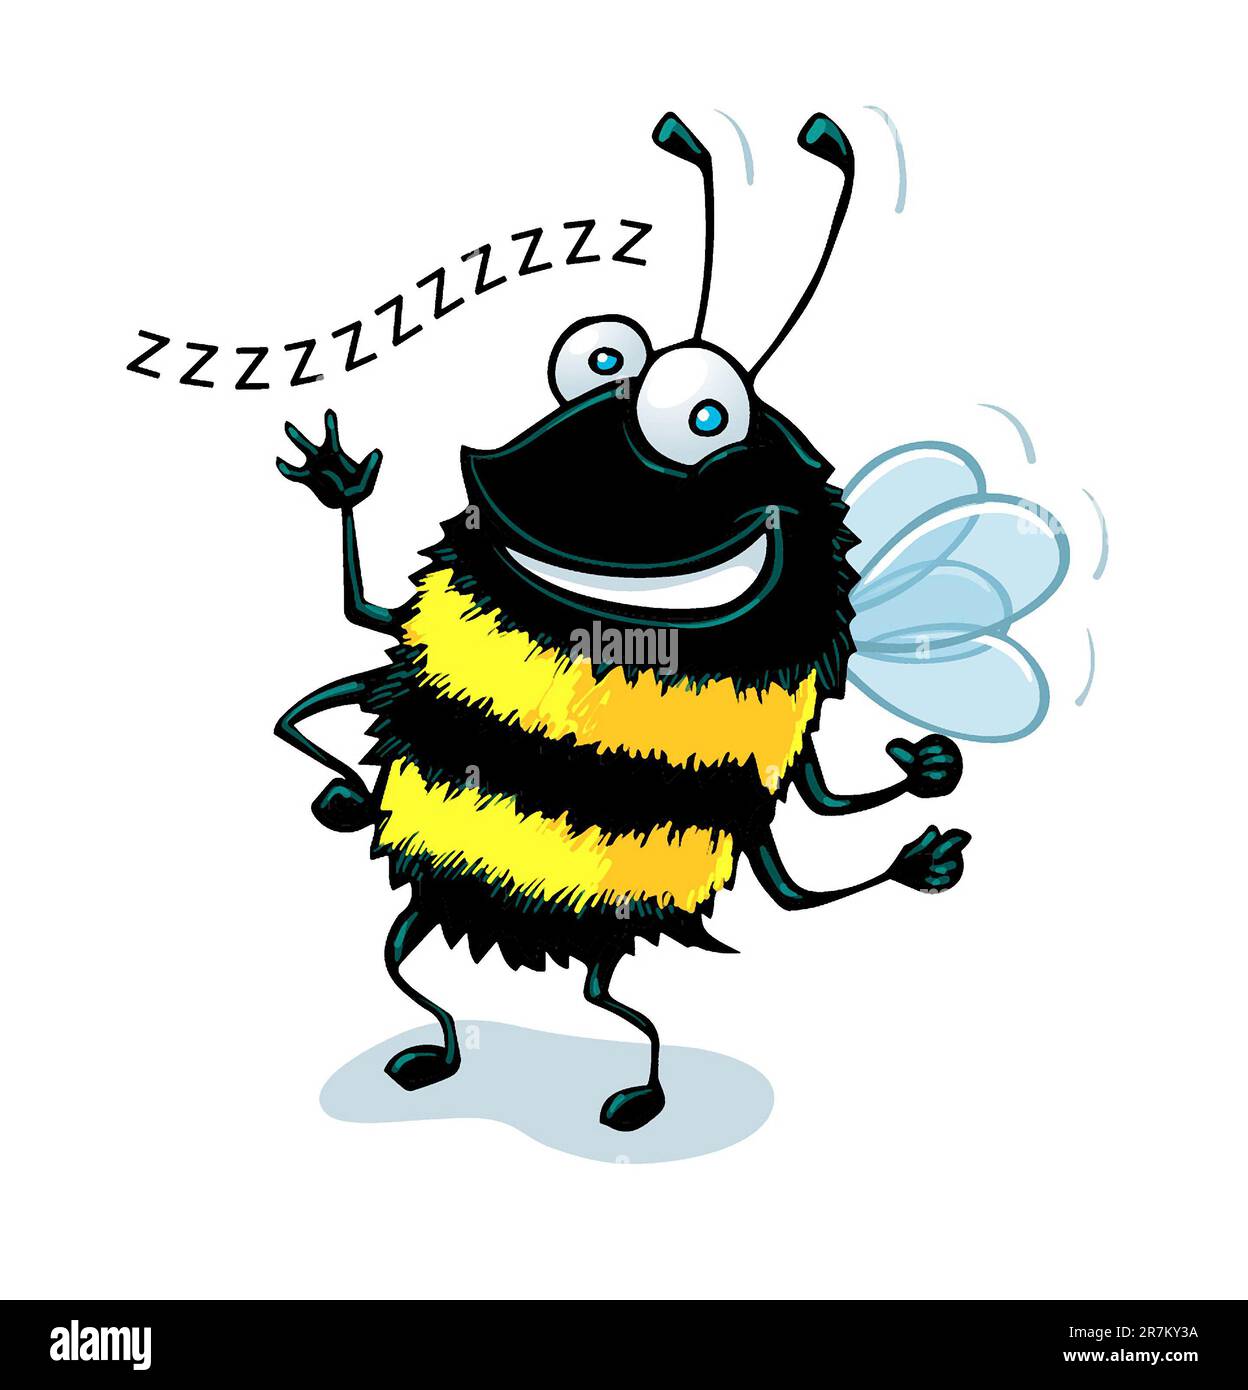 Concept art, Bumblebee felice nero e giallo, ape occupato, impollinatori, salvare le api, ape miele, ortografia dell'ape, idiomi e frasi, logo dell'ape, ginocchia dell'ape. Foto Stock